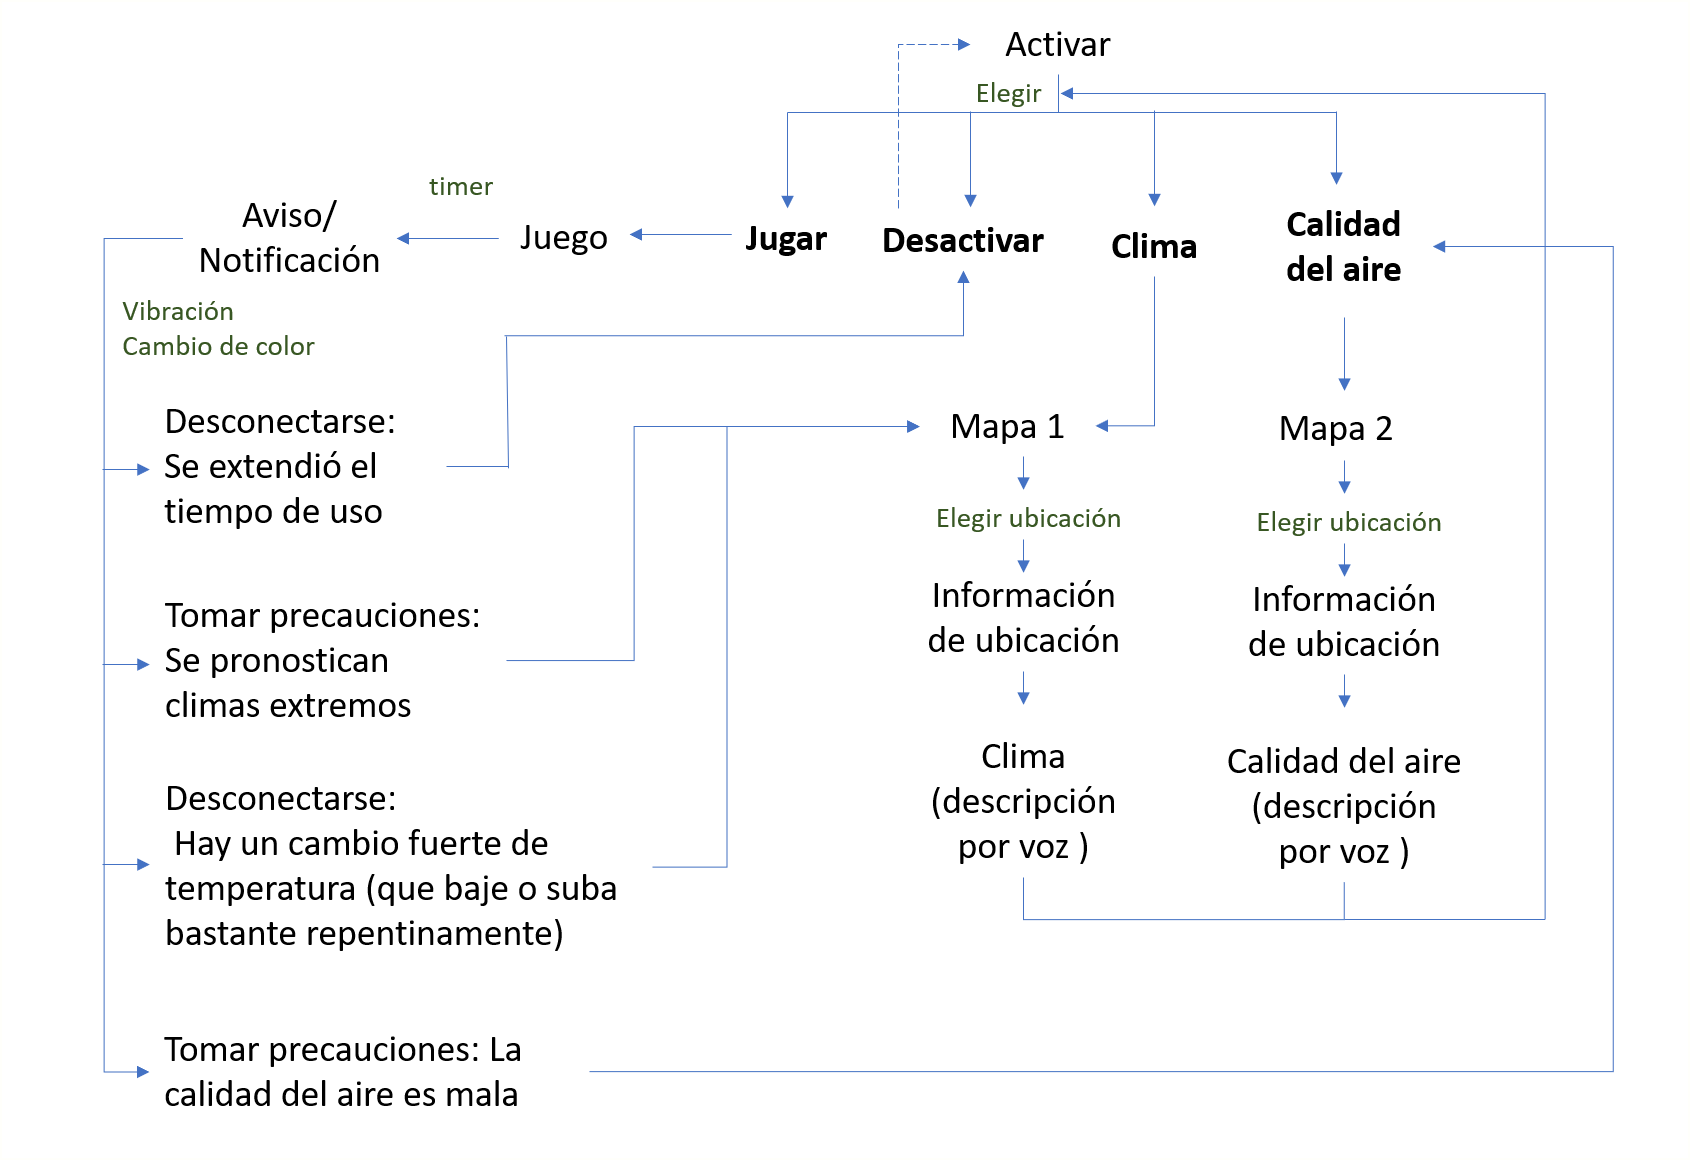 Diagrama de flujo que explica el funcionamiento de la interfaz ideada ppor el equipó